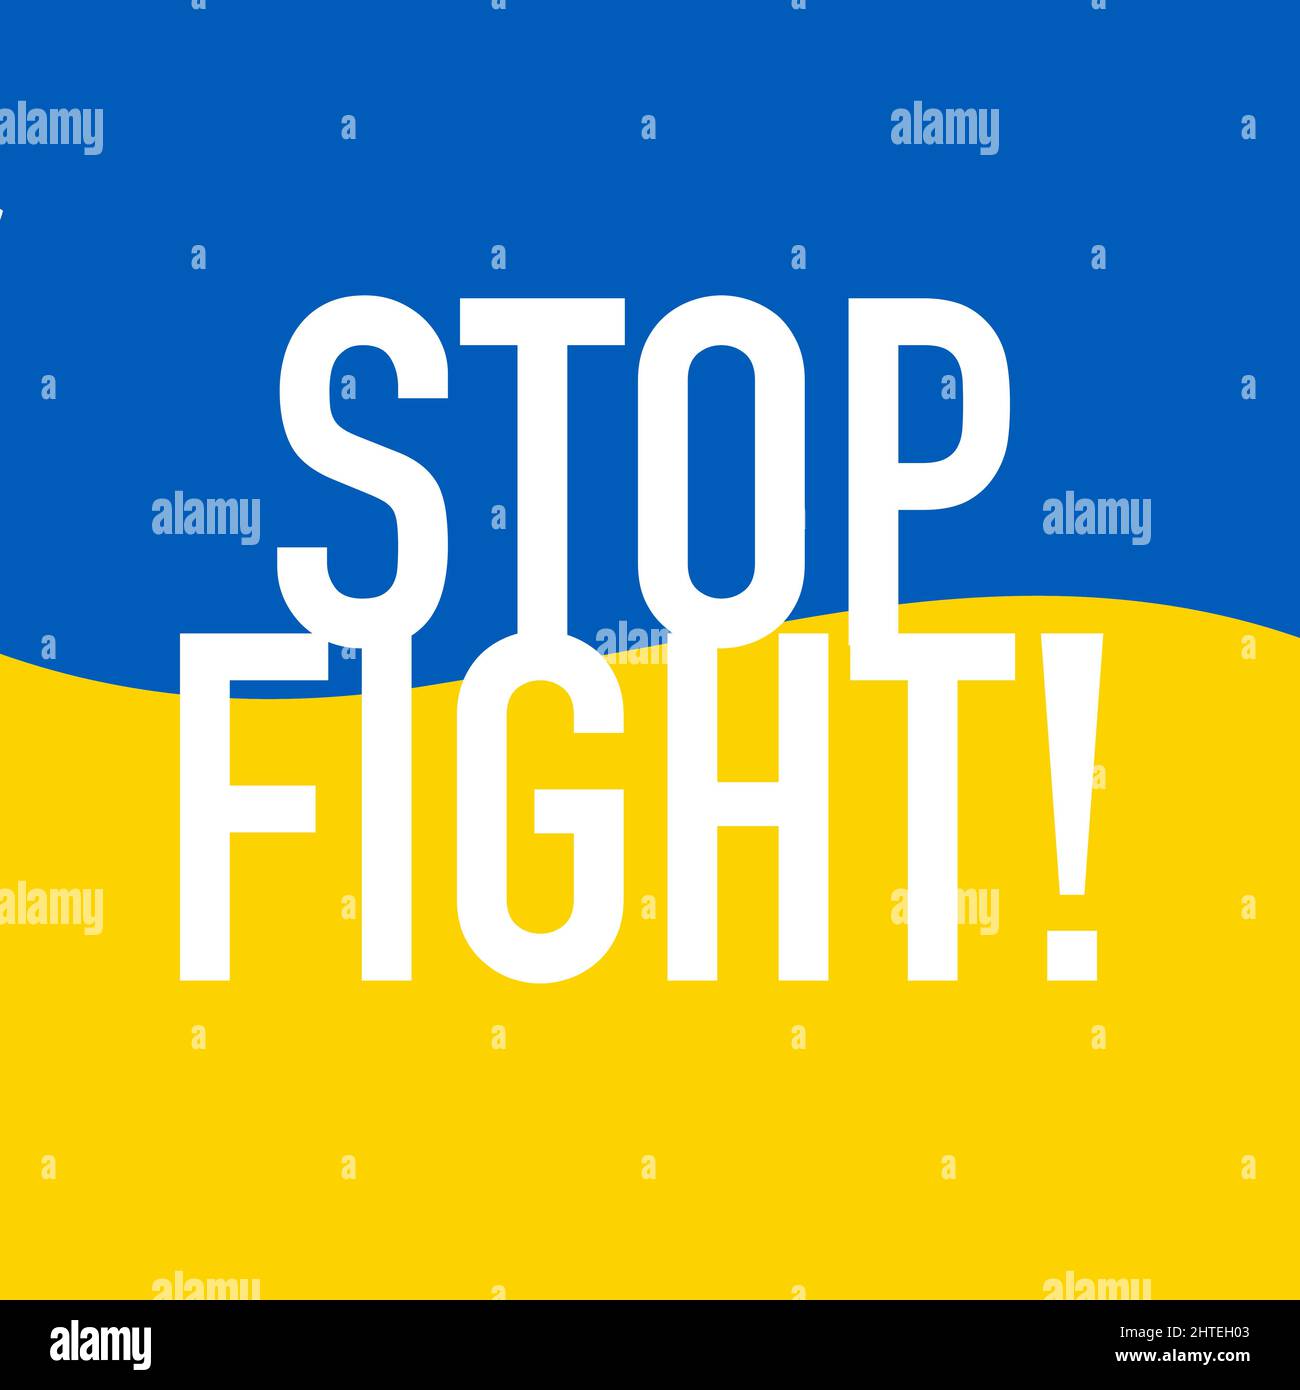 Stop Fight scritta sul badge bandiera ondulato. Icona di sostegno per le persone a Kiev e in Ucraina. Resta forte insieme. Simbolo patriottico, icona.-SupplementalCategor Illustrazione Vettoriale